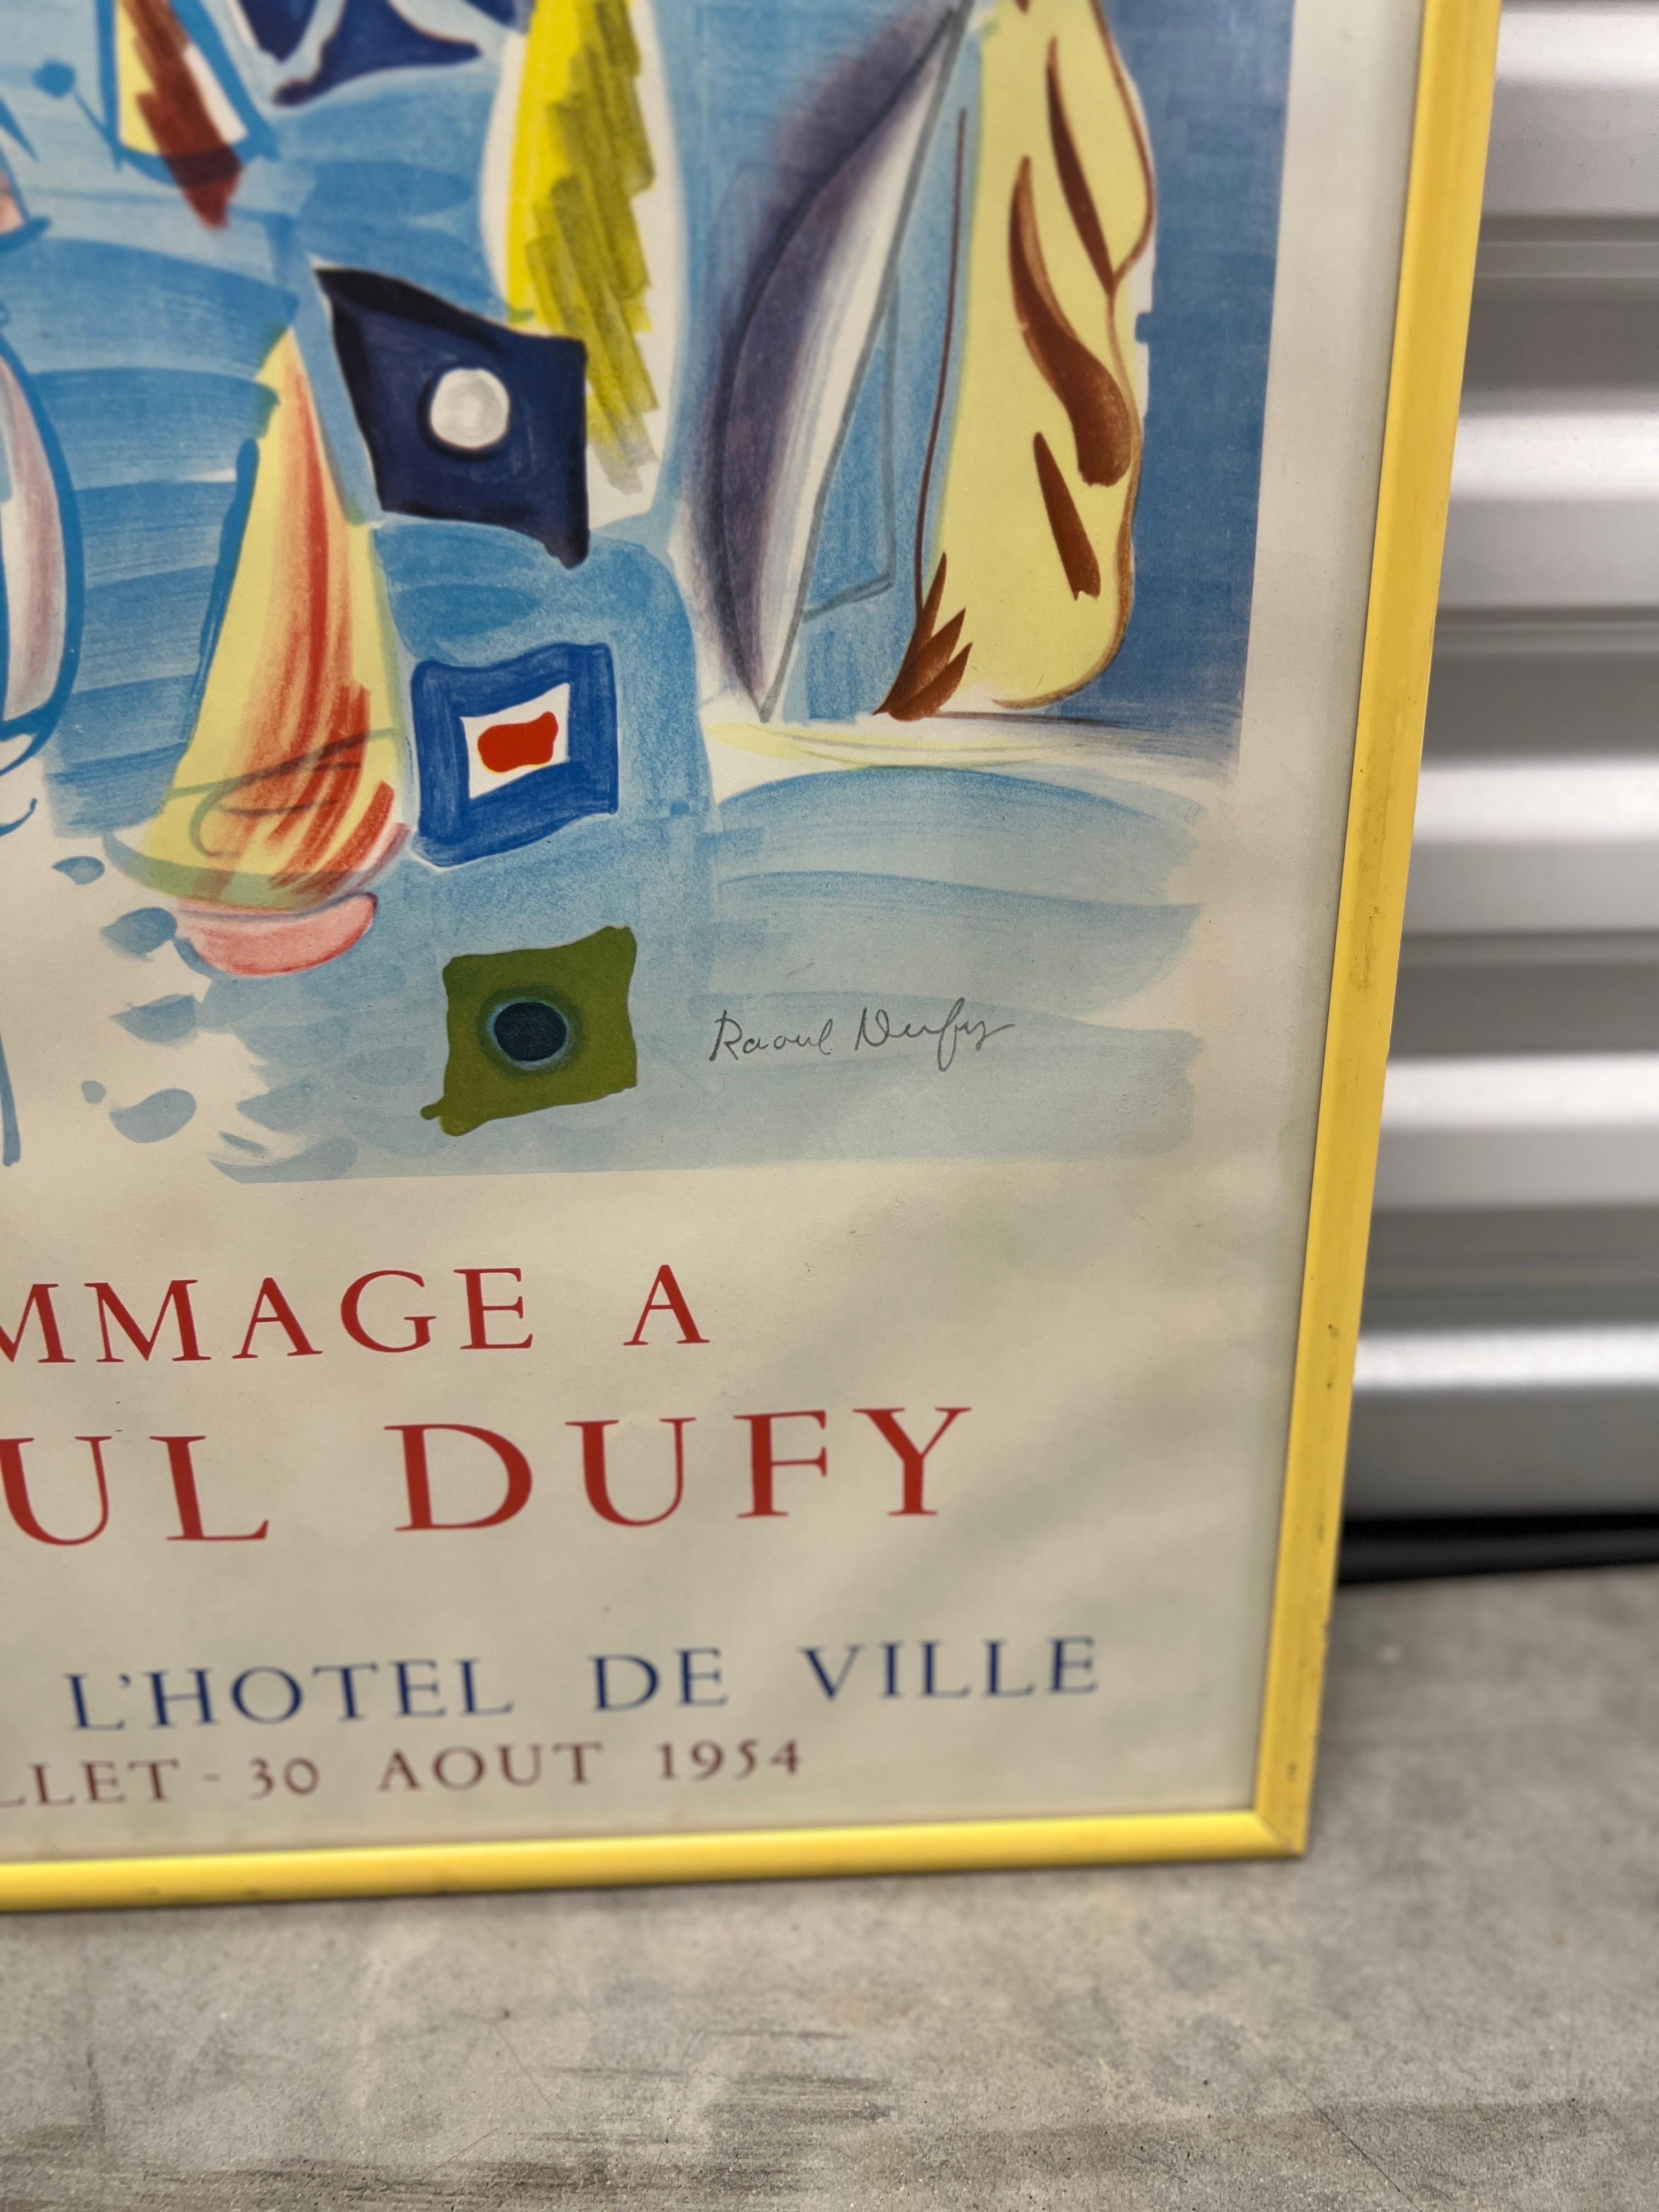 Paper Raoul Dufy Exhibition “Ville de Honfleur Hommage a Raoul Dufy” Circa 1954